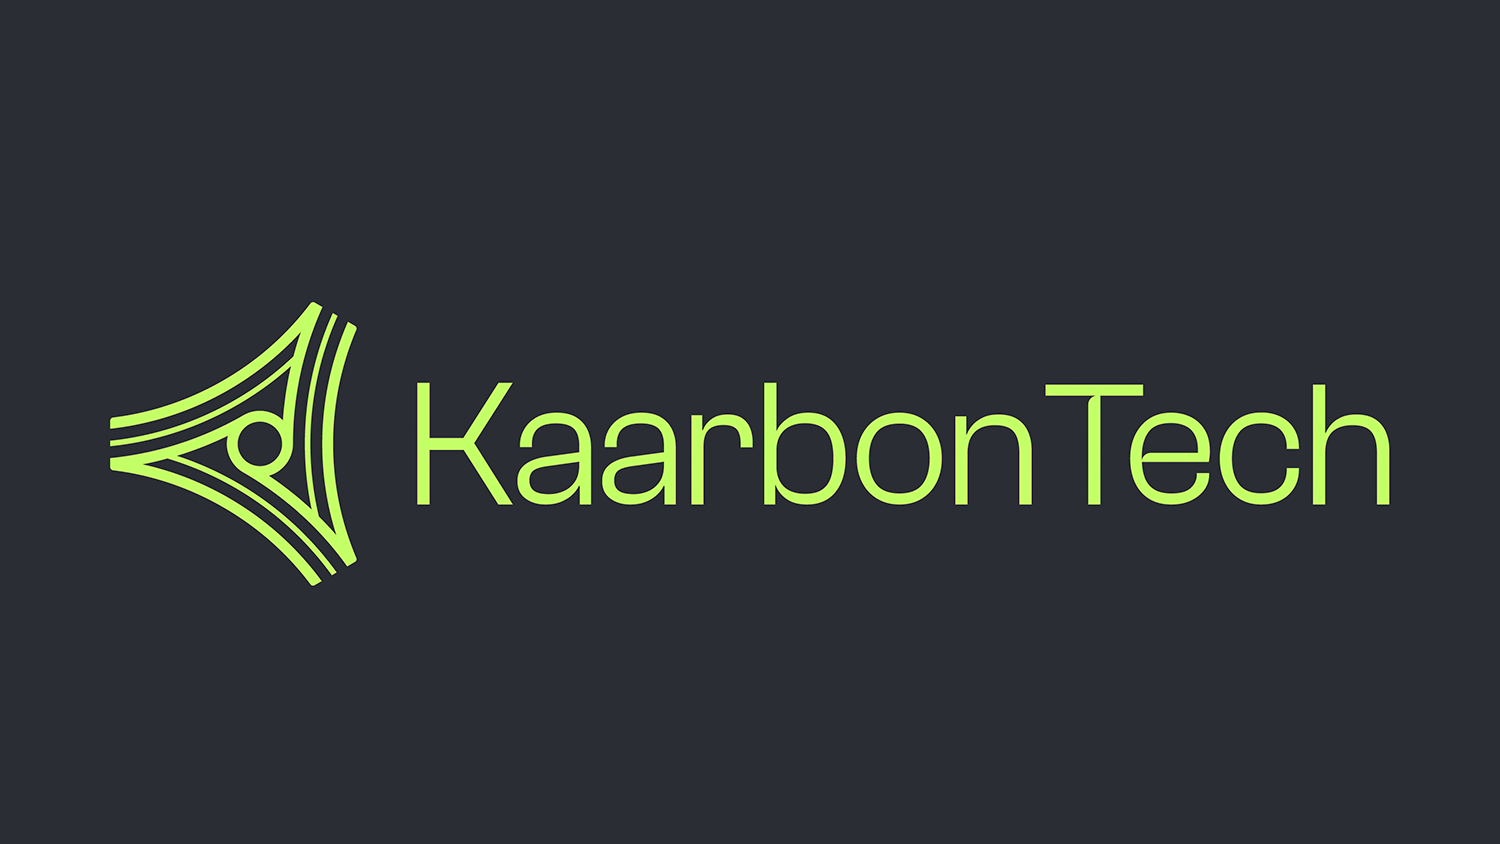 KaarbonTech